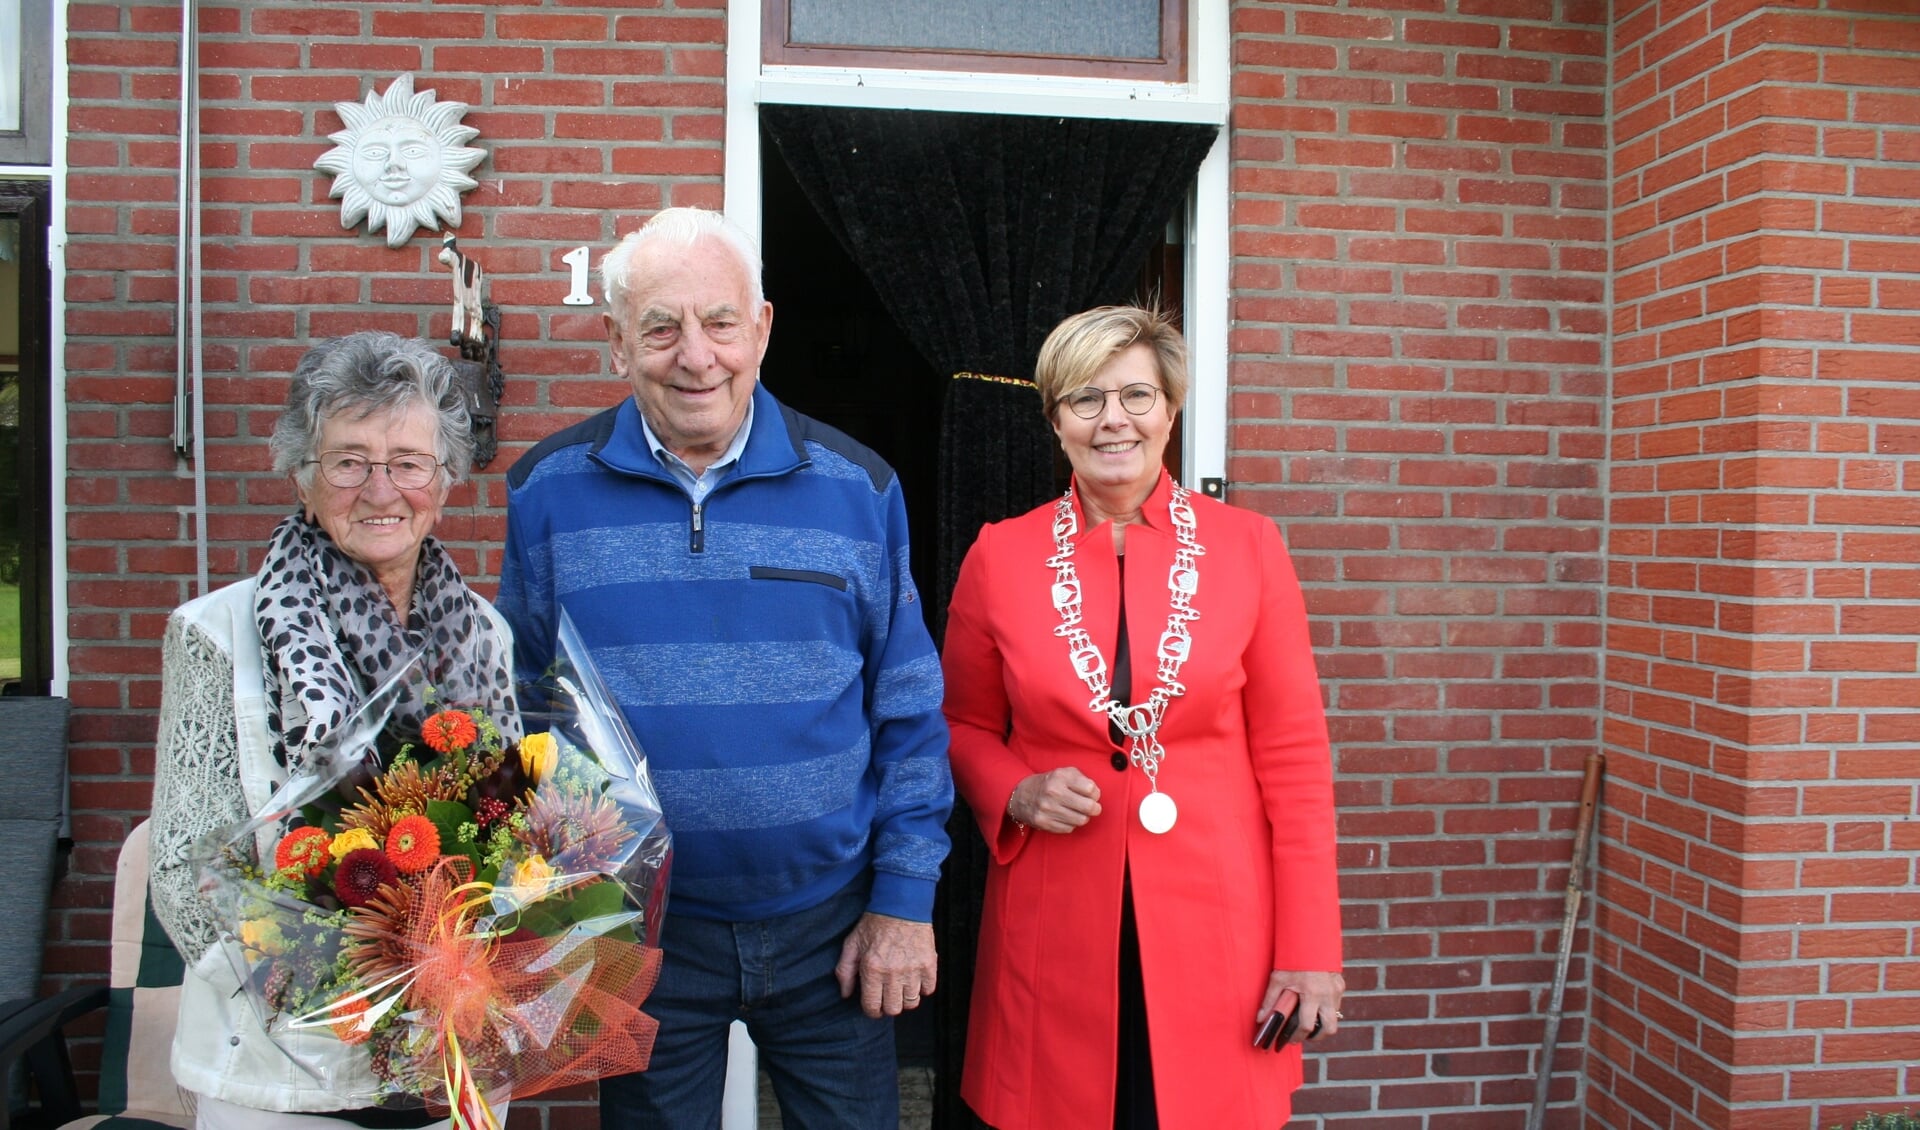 Loco-burgemeester Anja Prins kwam langs om het echtpaar te feliciteren met hun bijzondere jubileum. (Tekst/foto: Martin Meijerink)